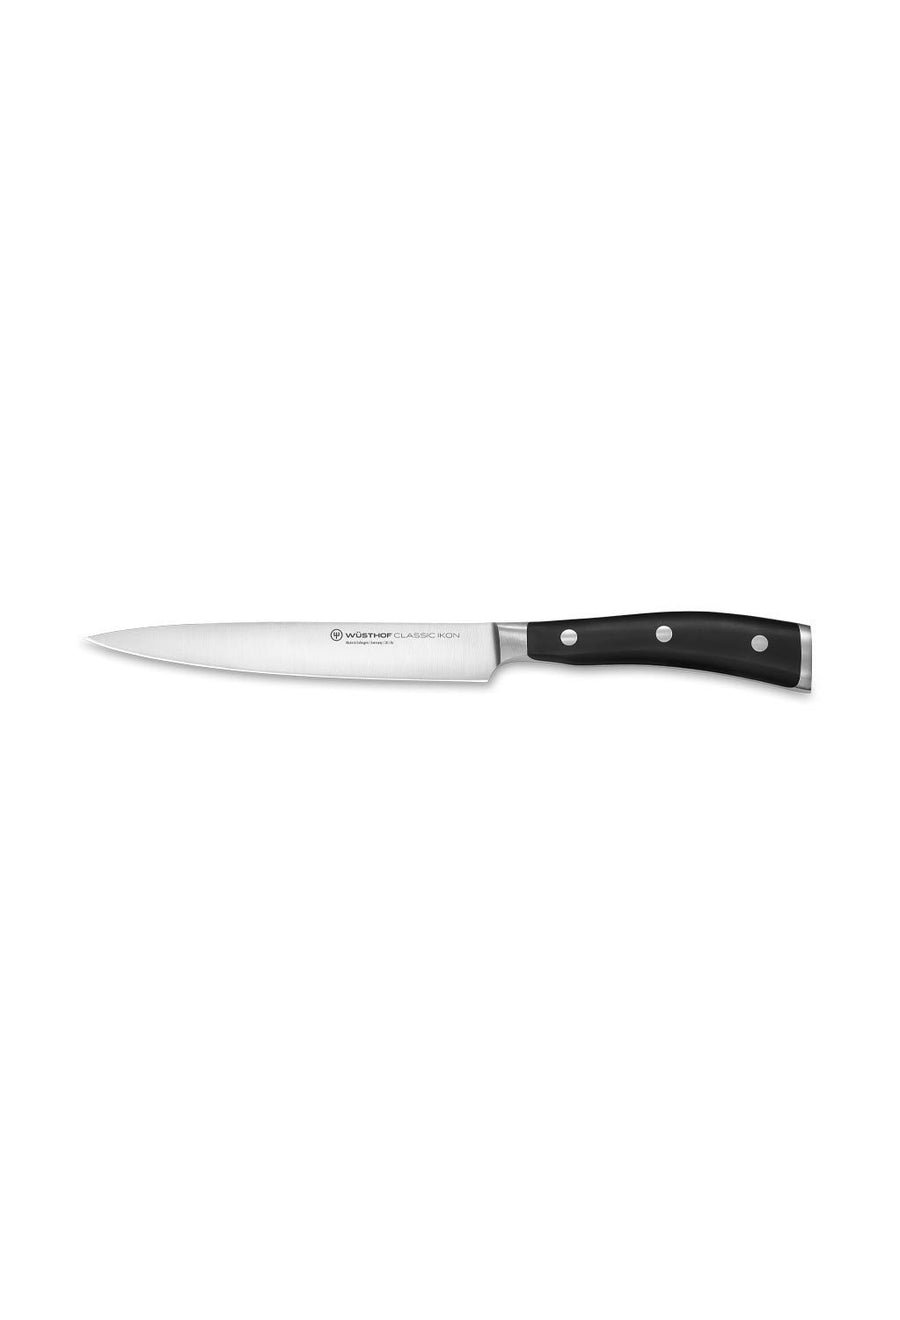 Wusthof Classic Ikon Utility Knife